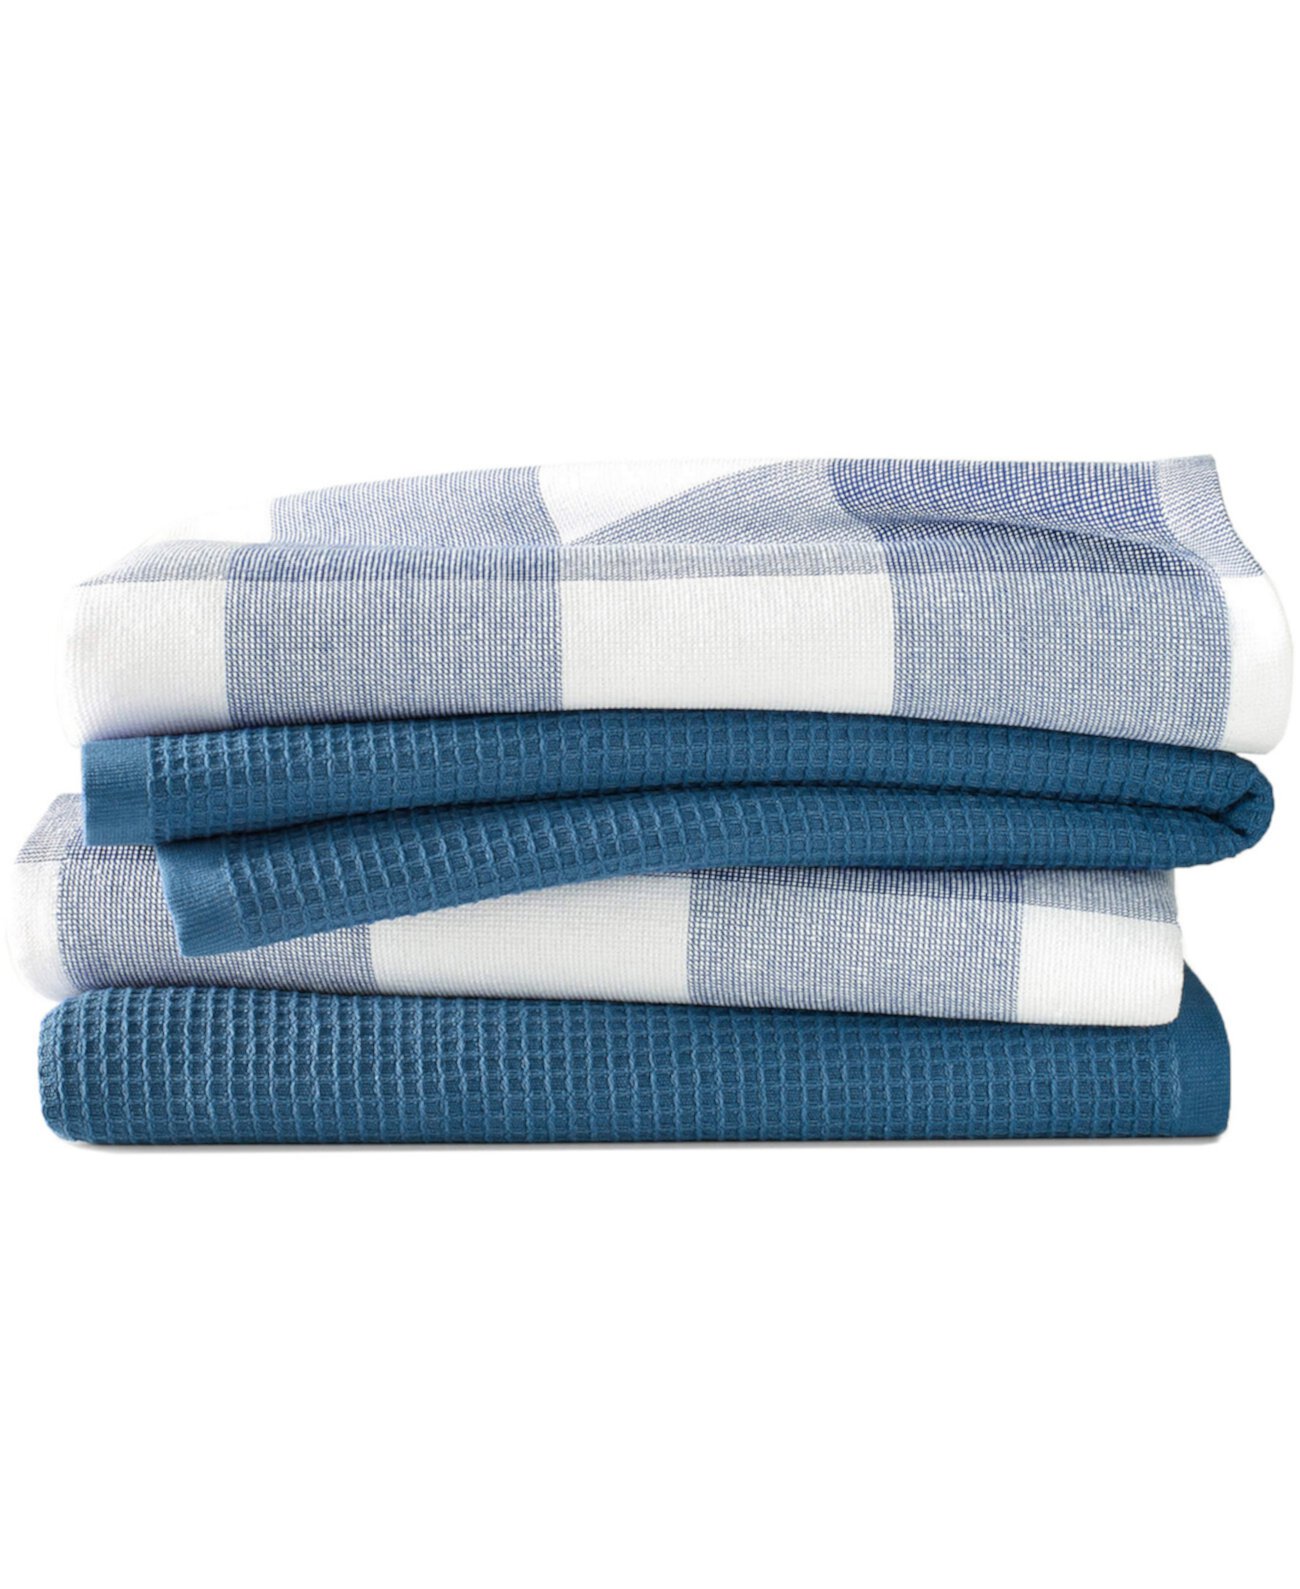 Кухонное полотенце вафельной ткани в клетку Jackson, набор из 4 шт. Blue Loom